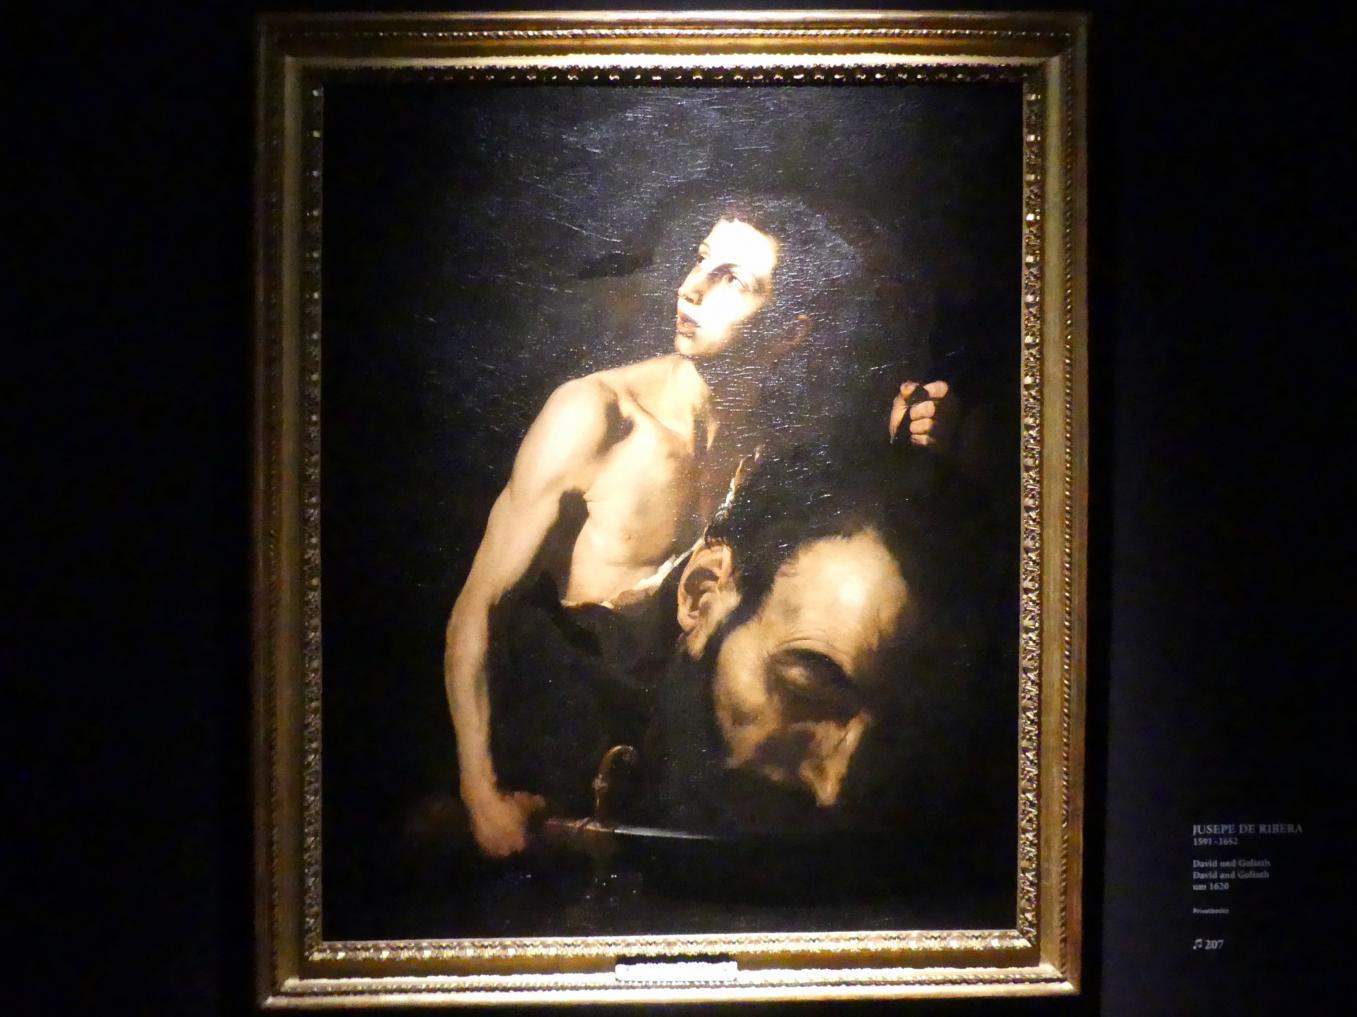 Jusepe de Ribera (1607–1650), David und Goliath, München, Alte Pinakothek, Ausstellung "Utrecht, Caravaggio und Europa" vom 17.04.-21.07.2019, Helden: David und Goliath, um 1620